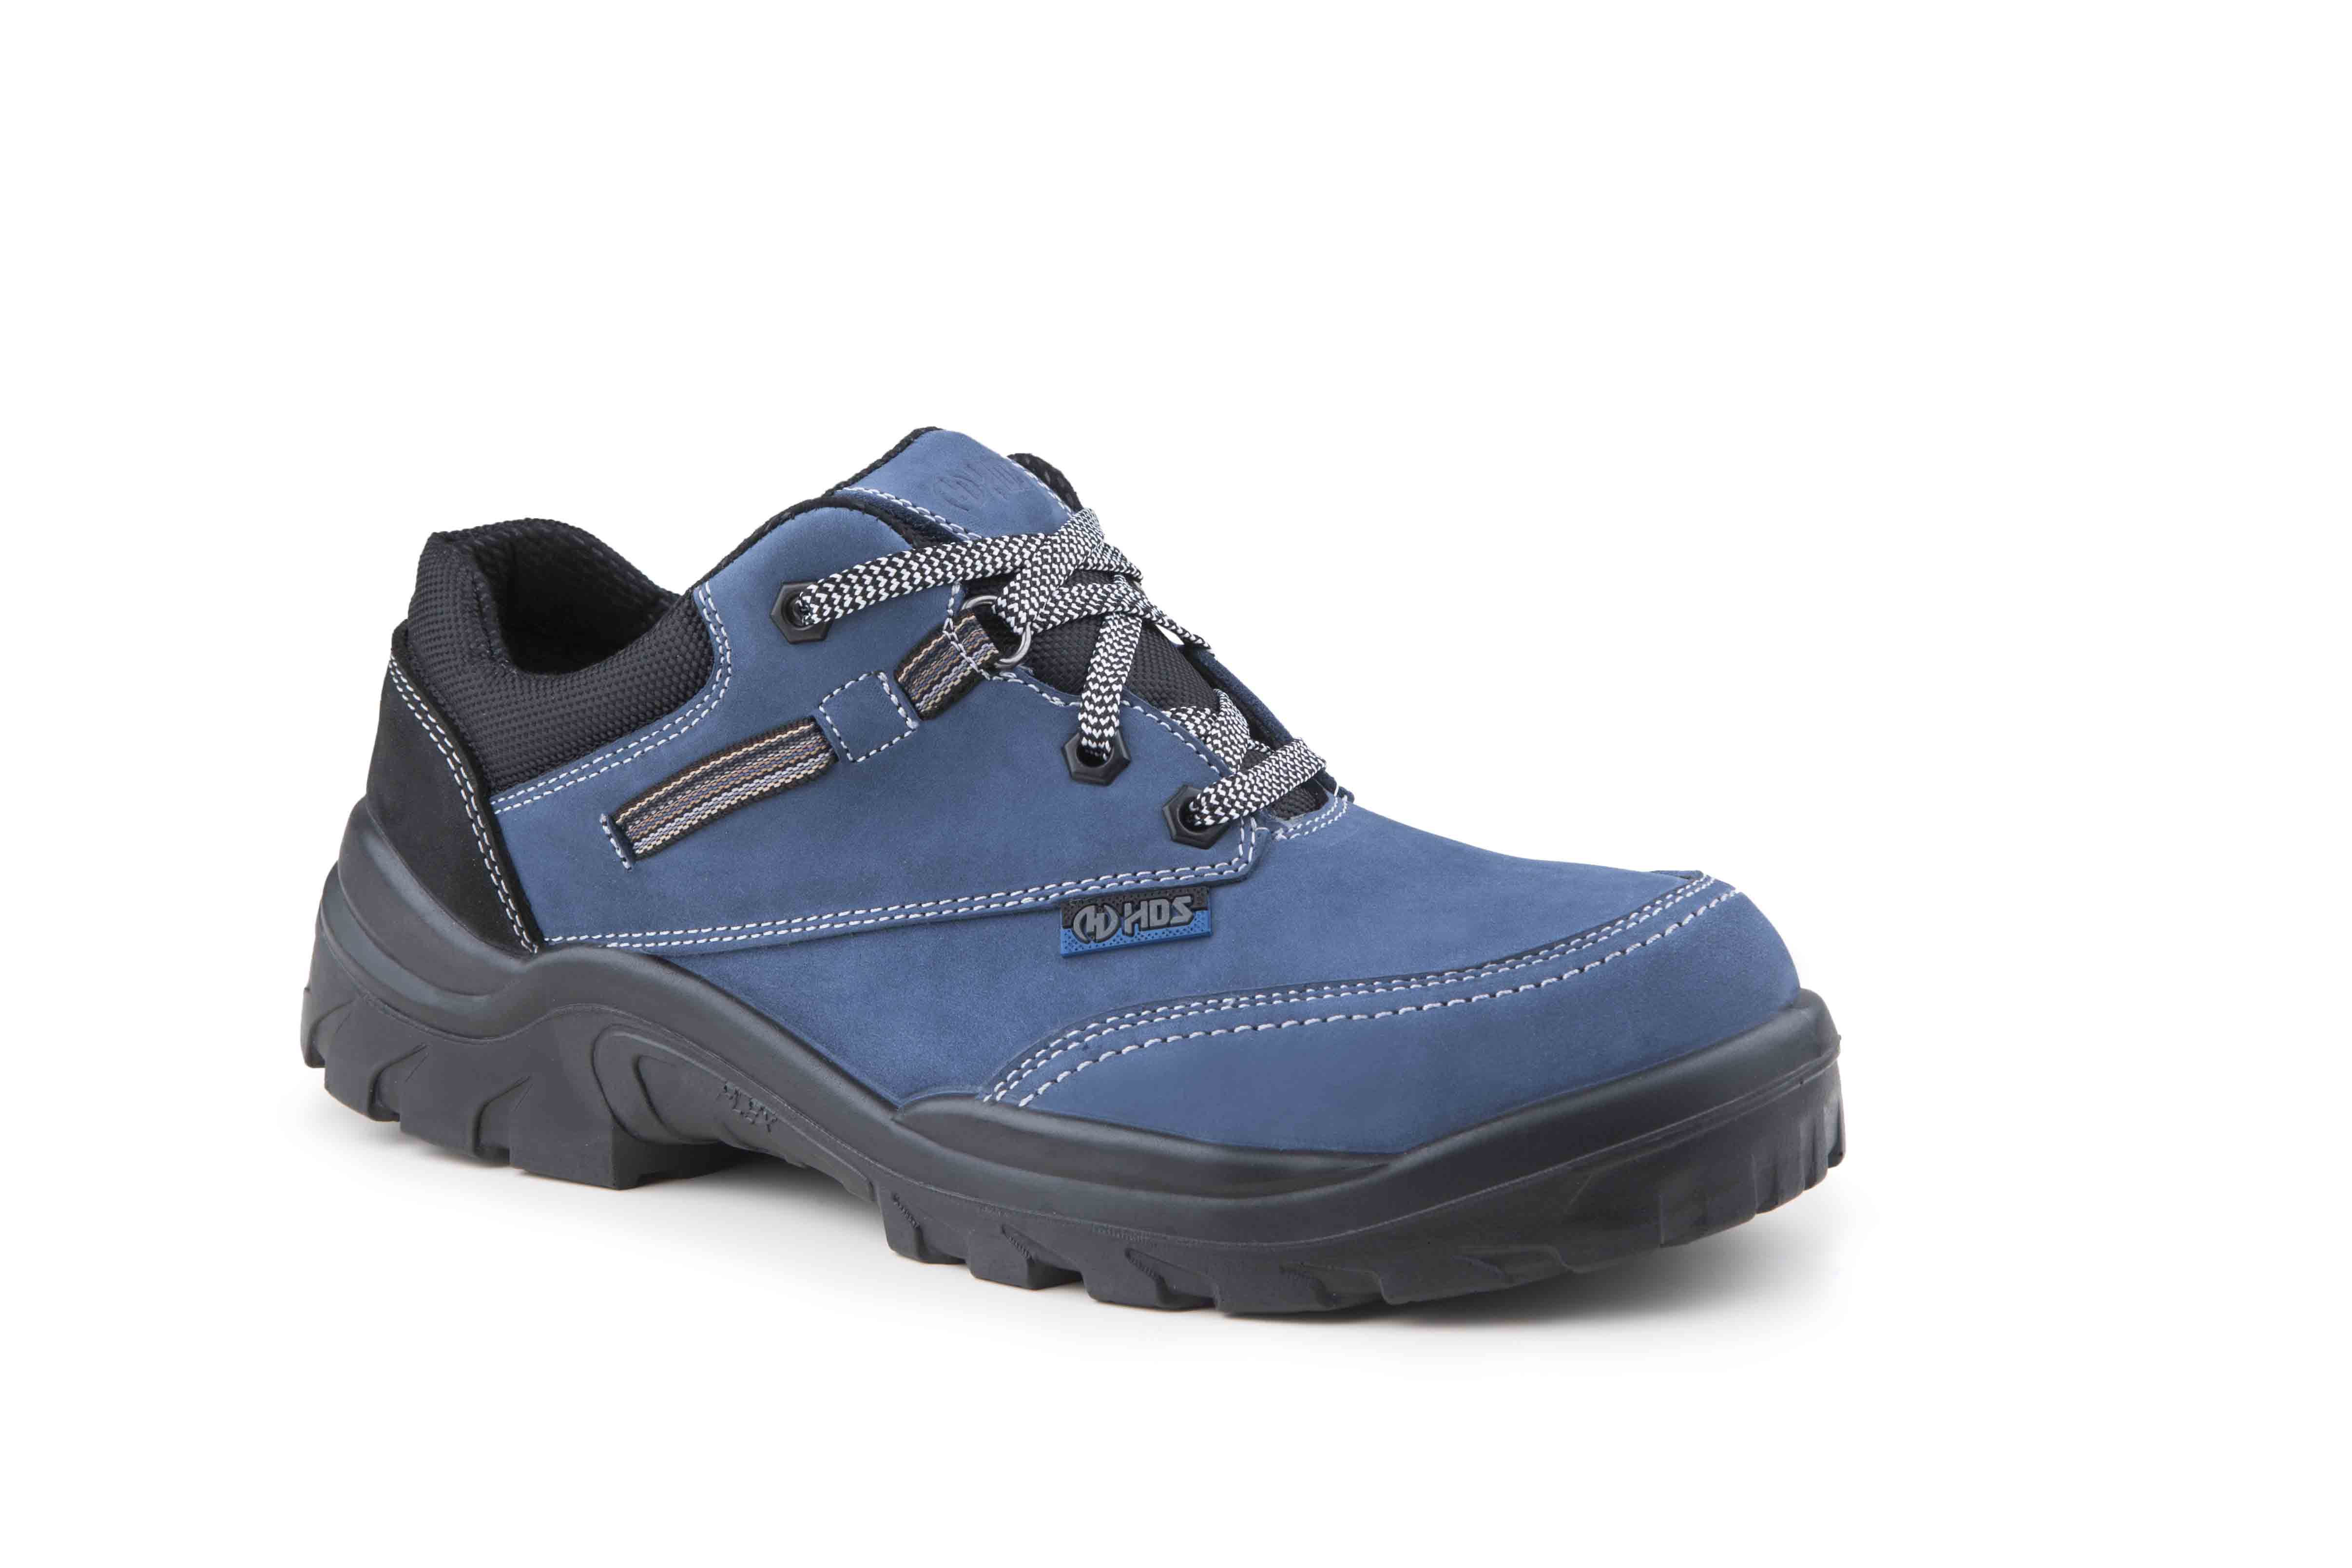 HDS İş Güvenlik Ayakkabıları, Fx Town Modeli